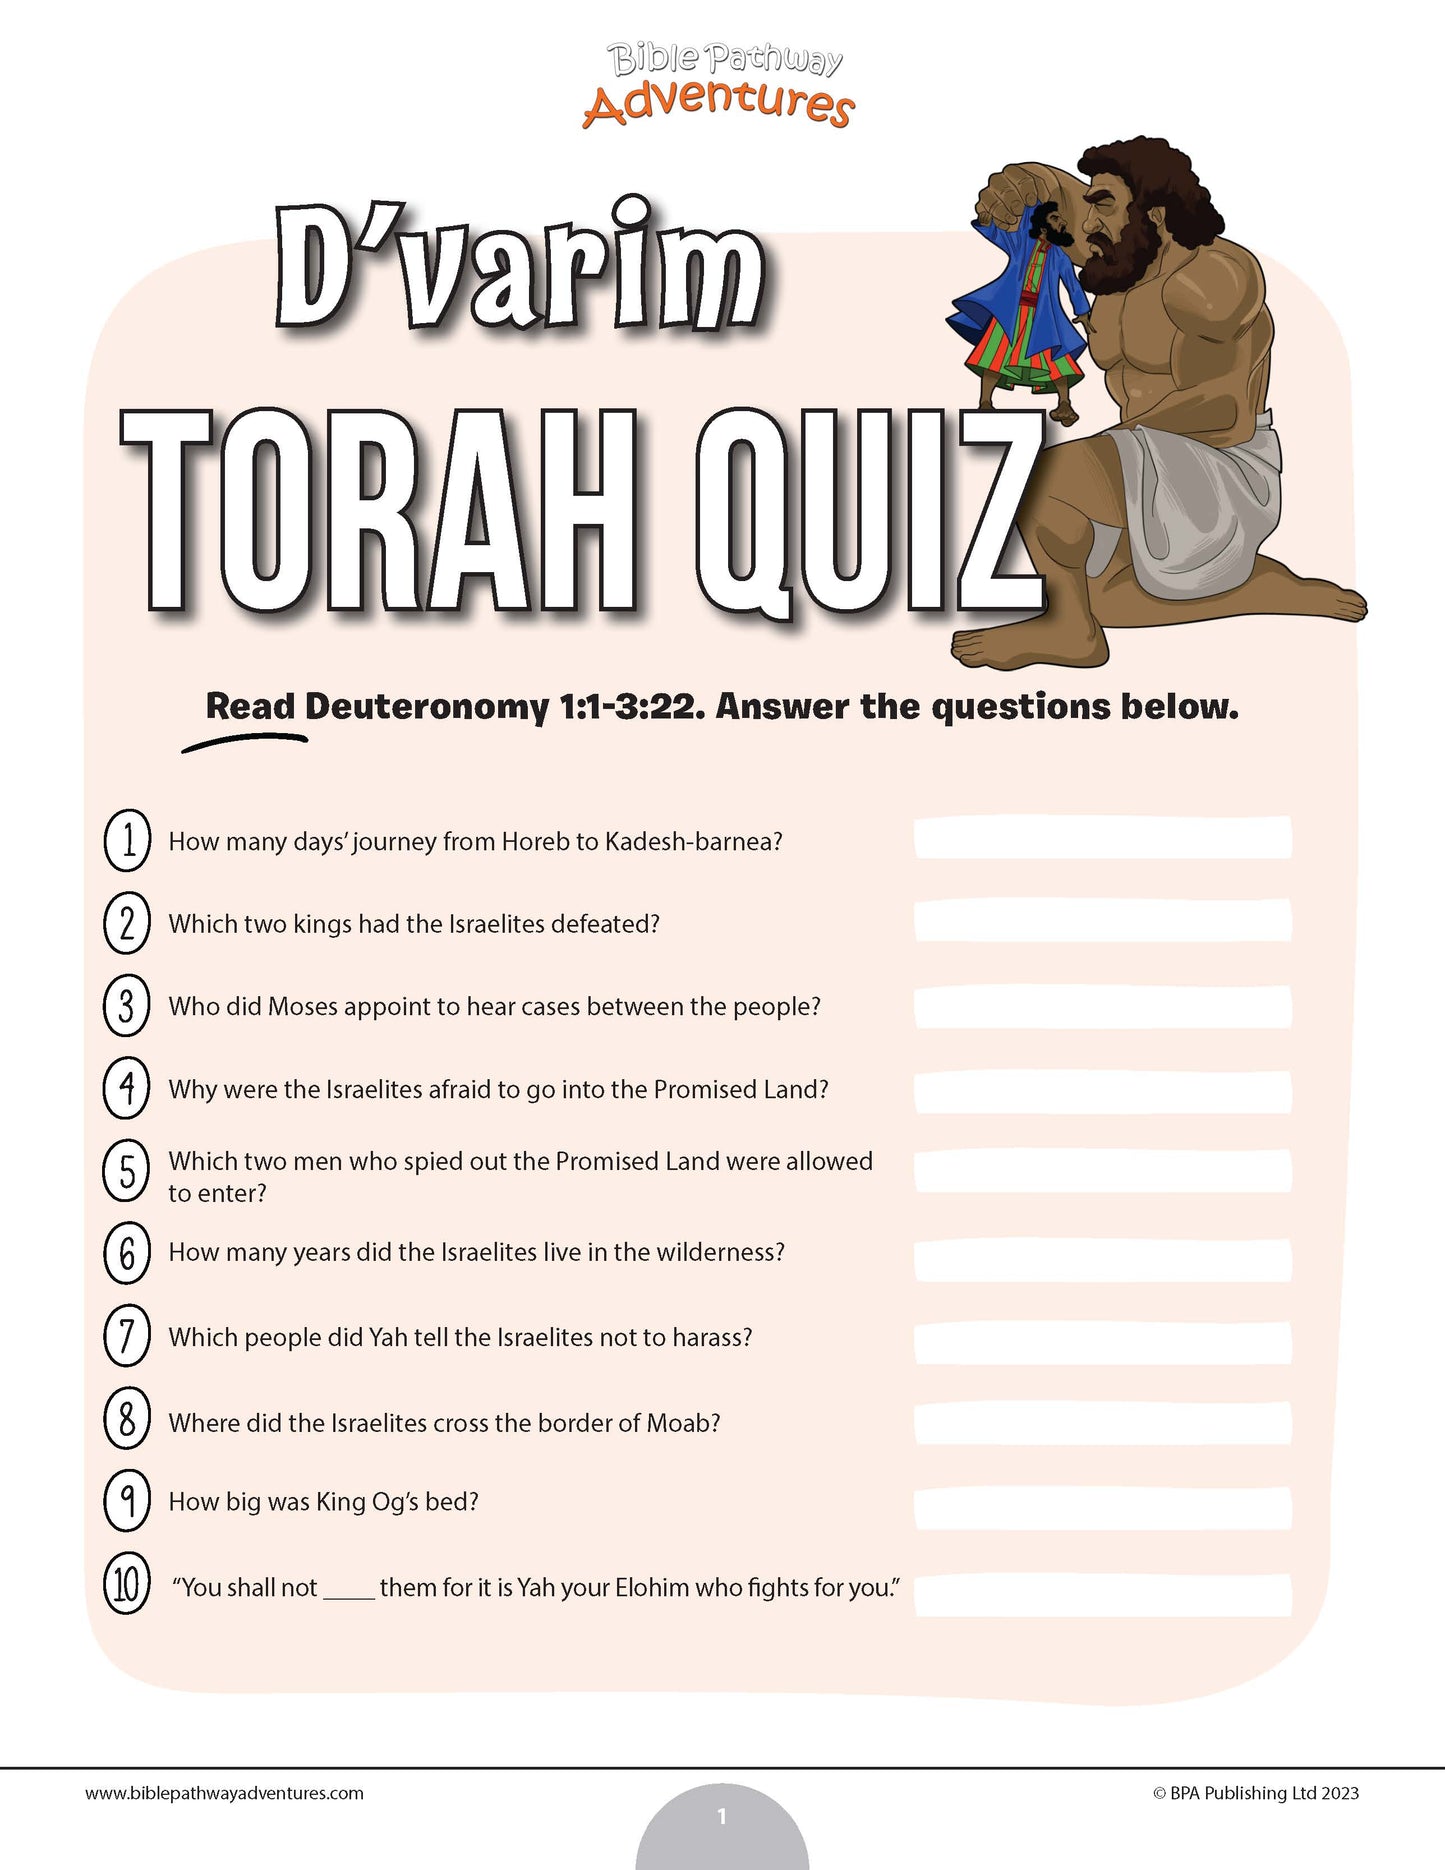 D’varim Torah quiz